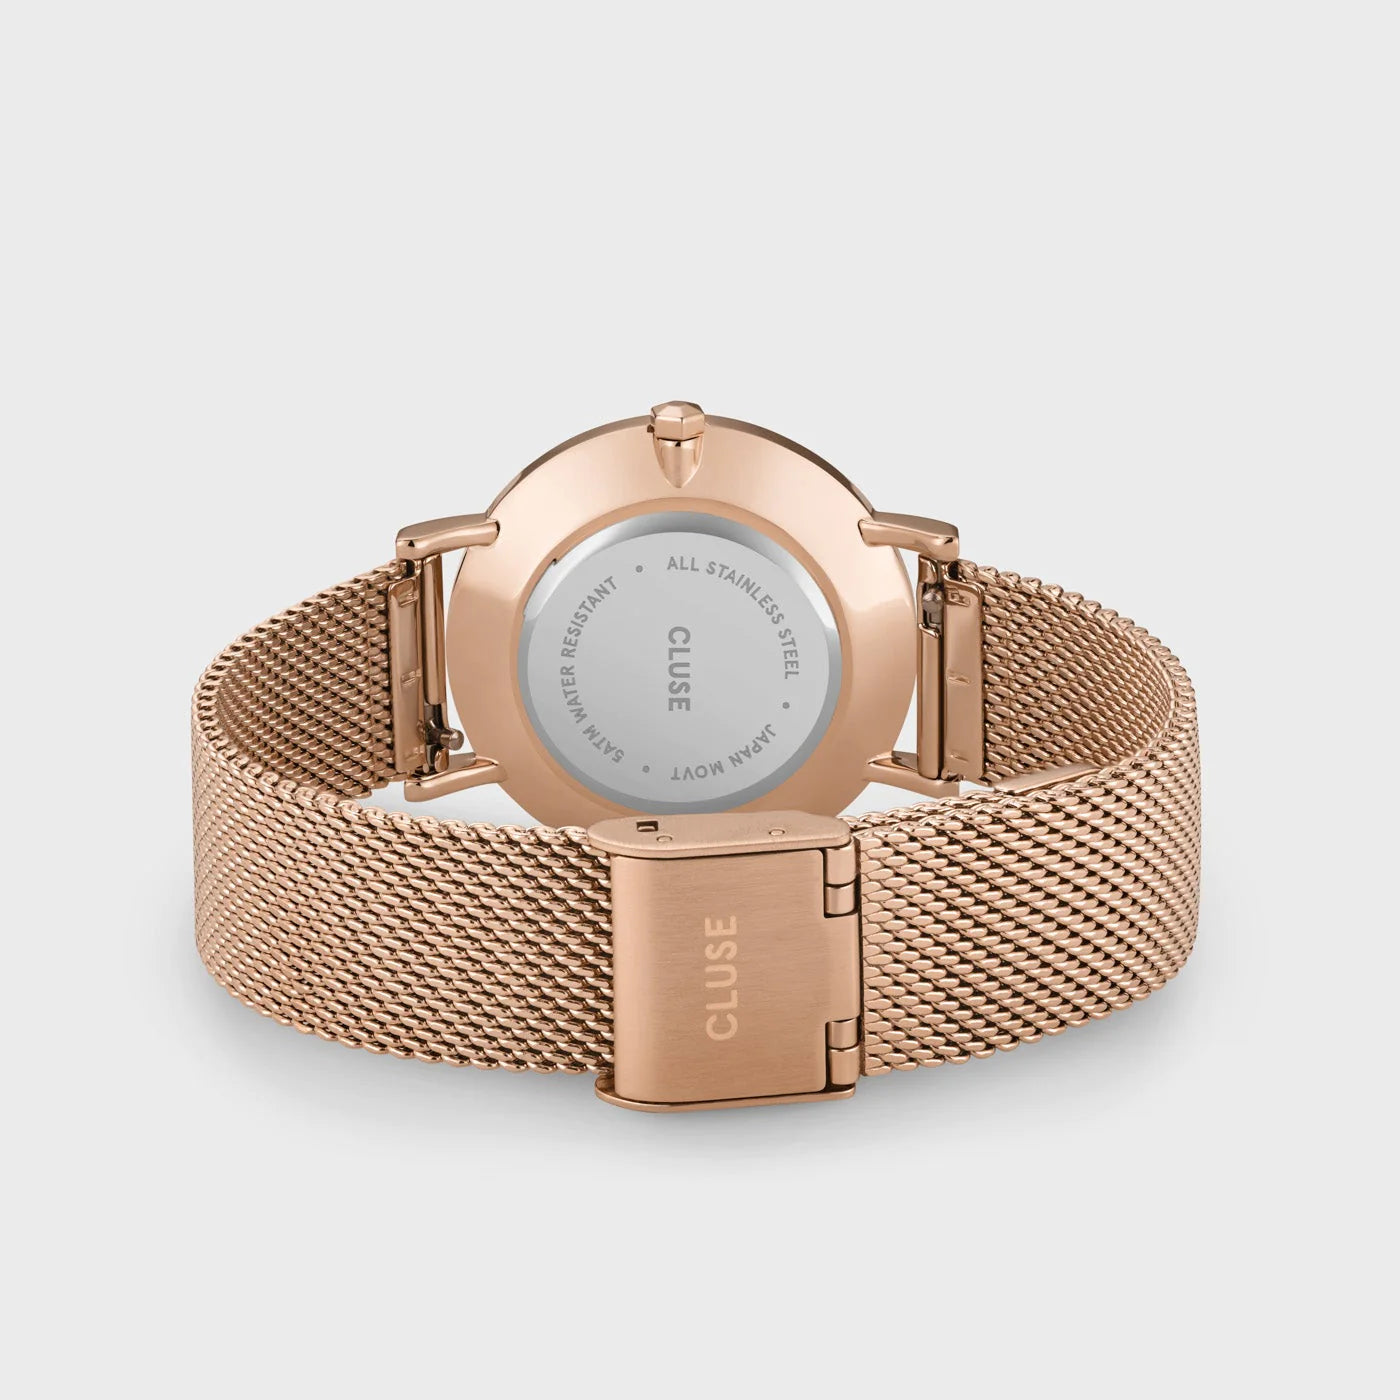 Gehäuseboden und Mesh-Armband der Cluse Stahl-Uhr "Minuit Mesh" in roségoldener Farbe mit einem silbernen Diamant-Zifferblatt